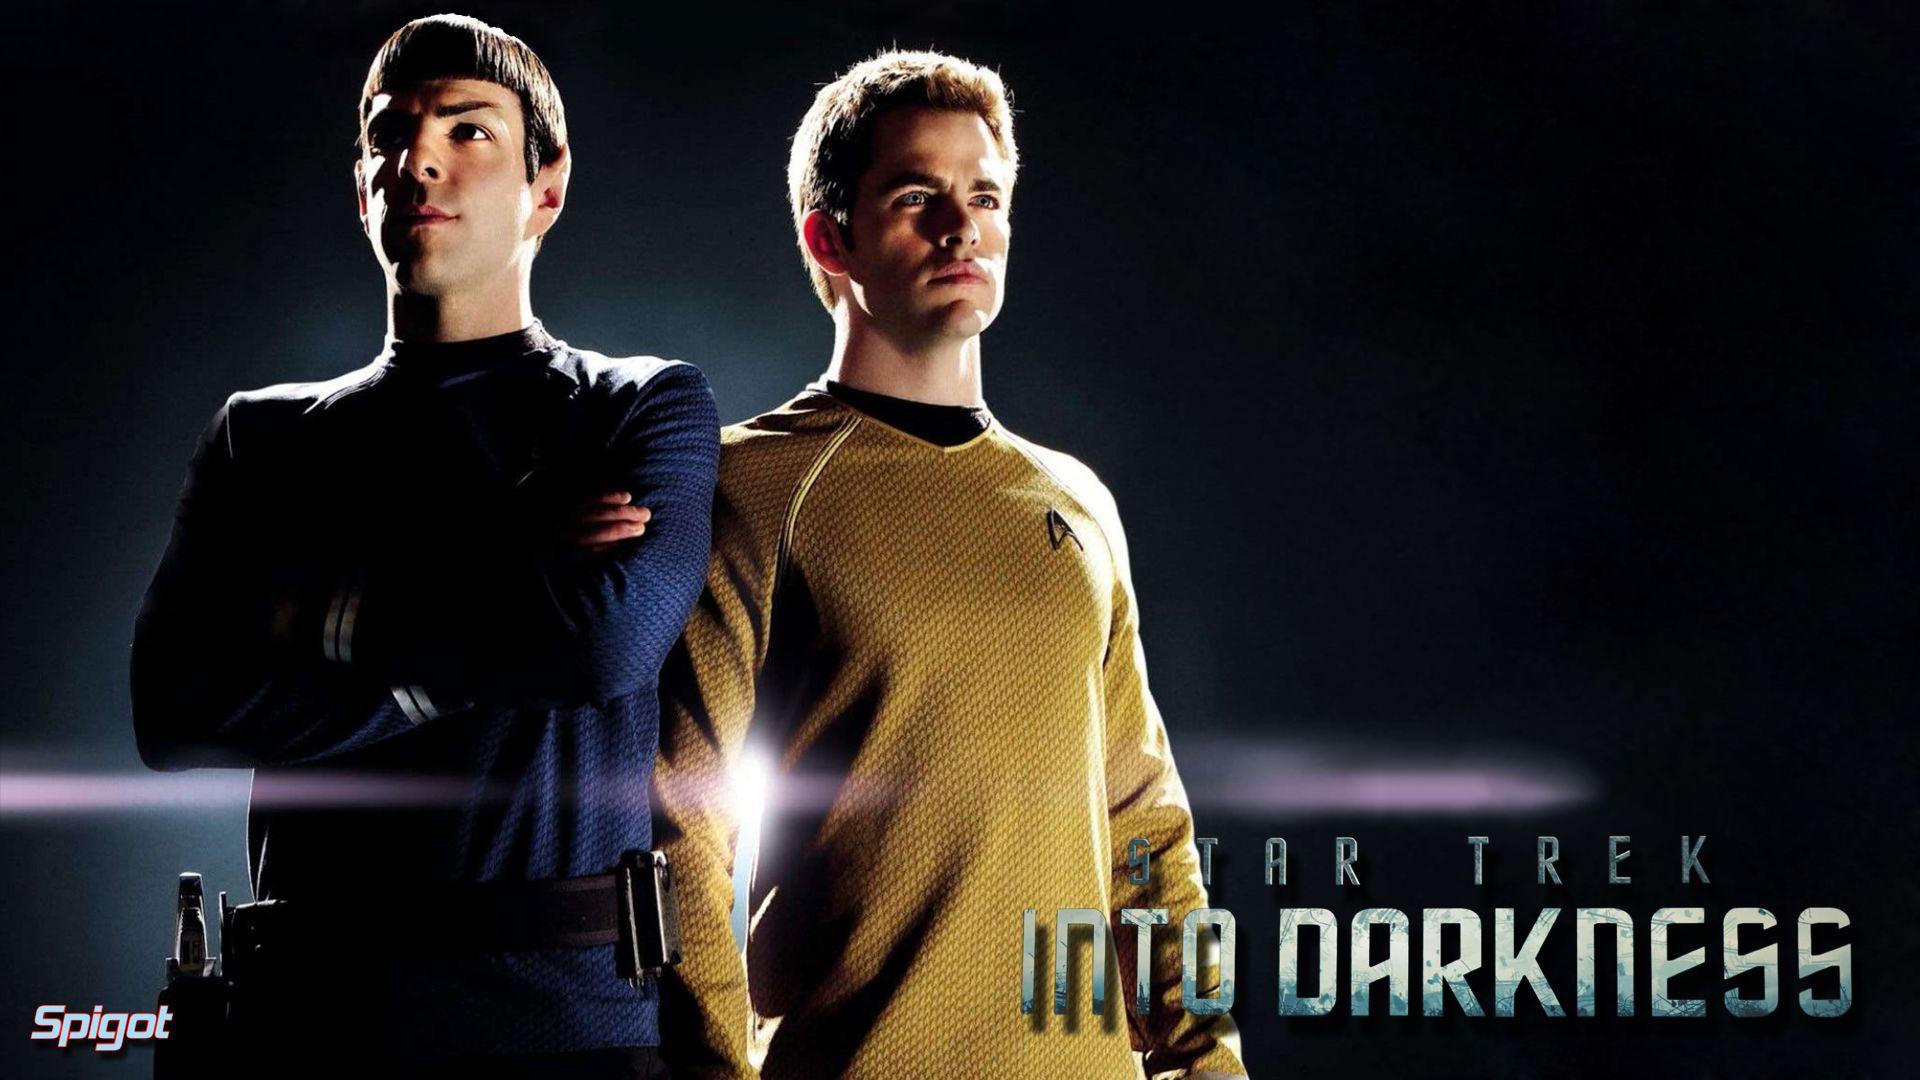 Star Trek Into Darkness. George Spigot's Blog